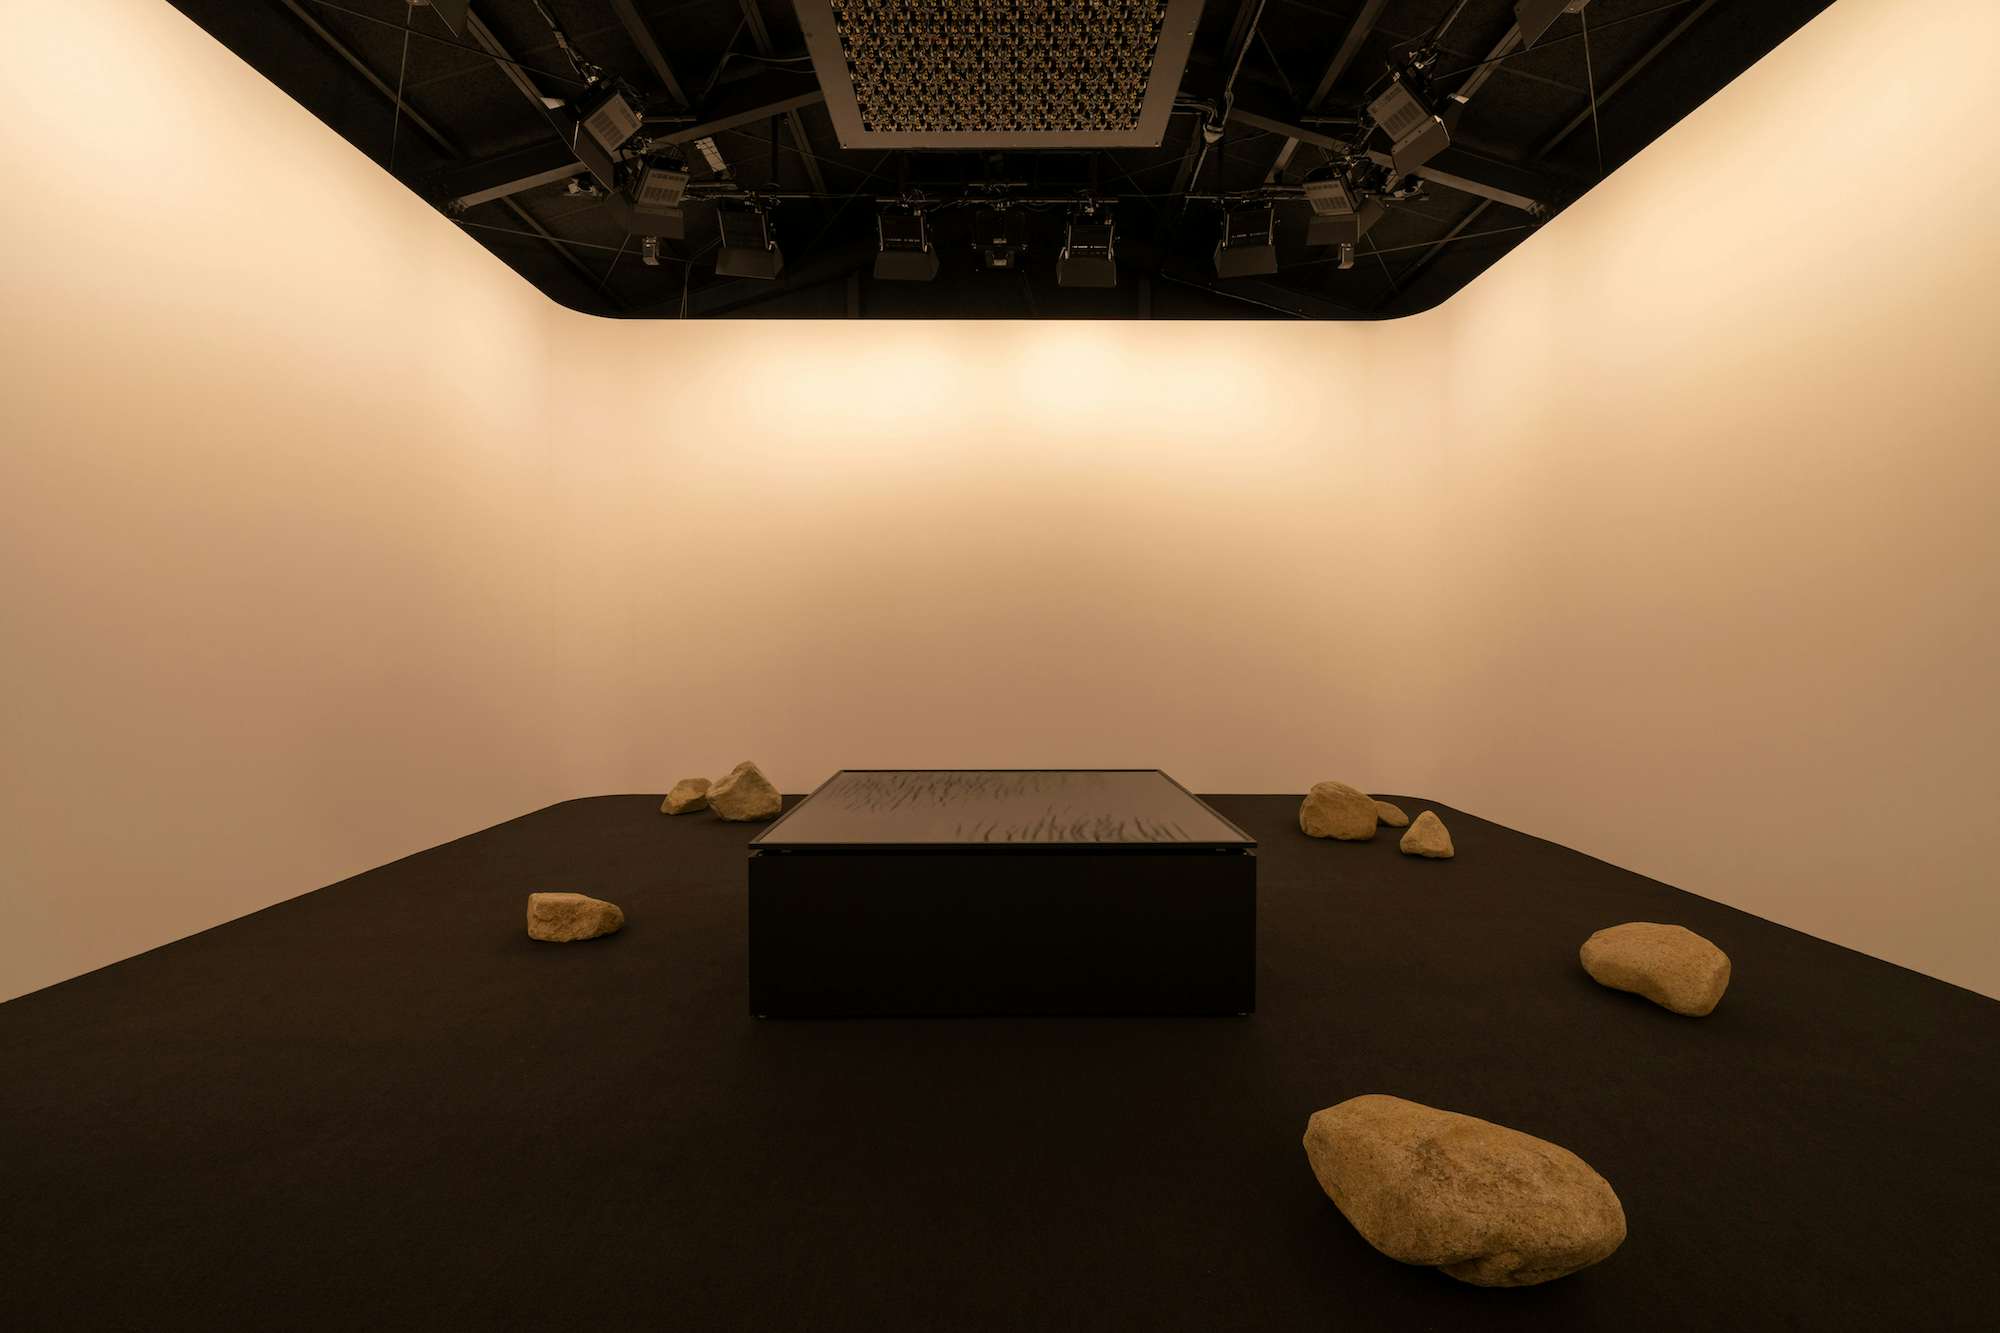 坂本龍一と高谷史郎による展覧会「ART – ENVIRONMENT–LIFE 2021」が 